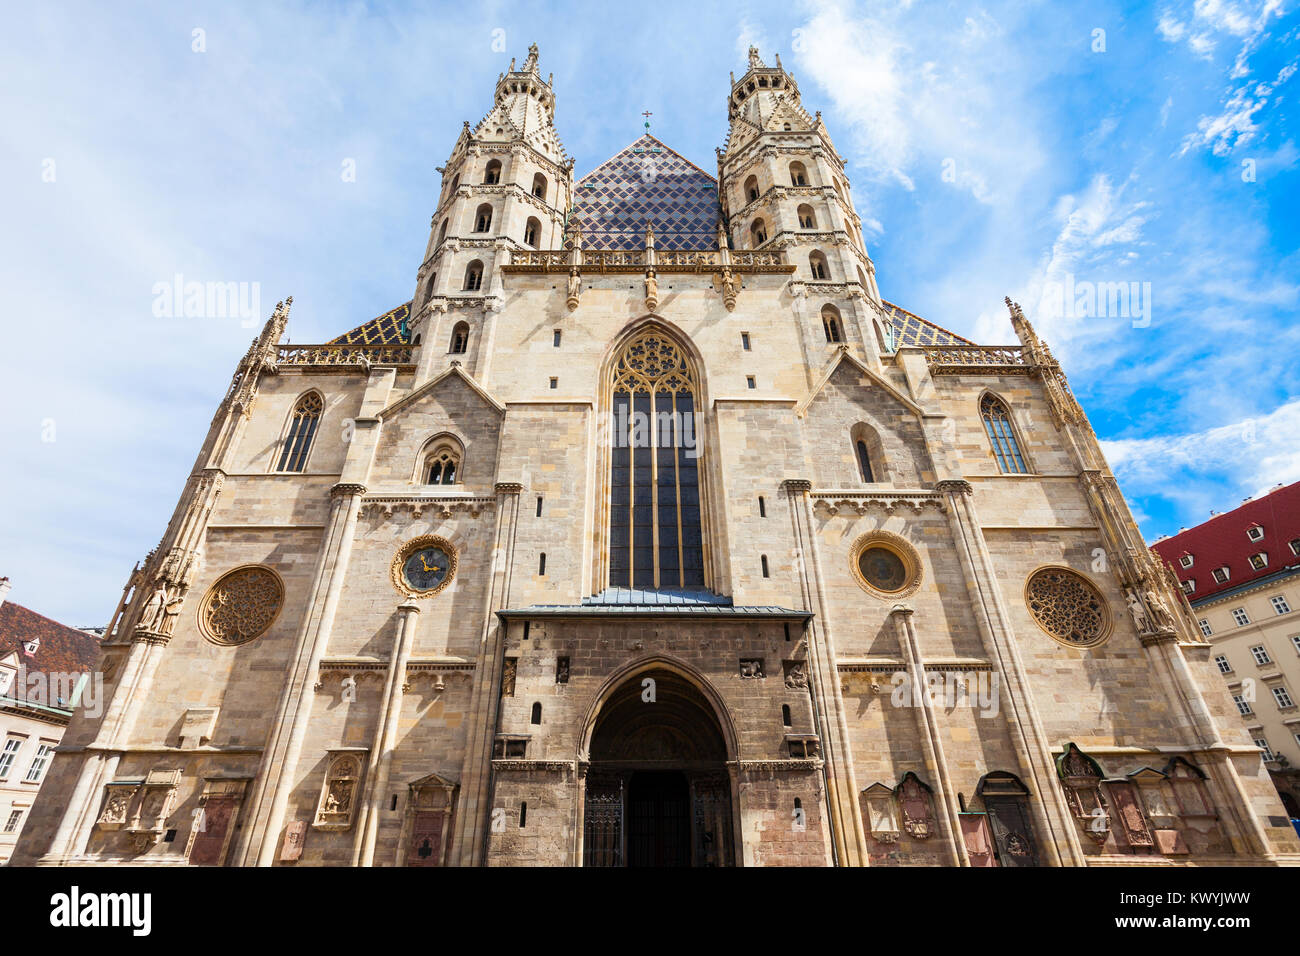 La Cathédrale St Stephens est l'église mère de l'Archidiocèse de Vienne, Autriche. La Cathédrale St Stephens est le plus important religio Banque D'Images